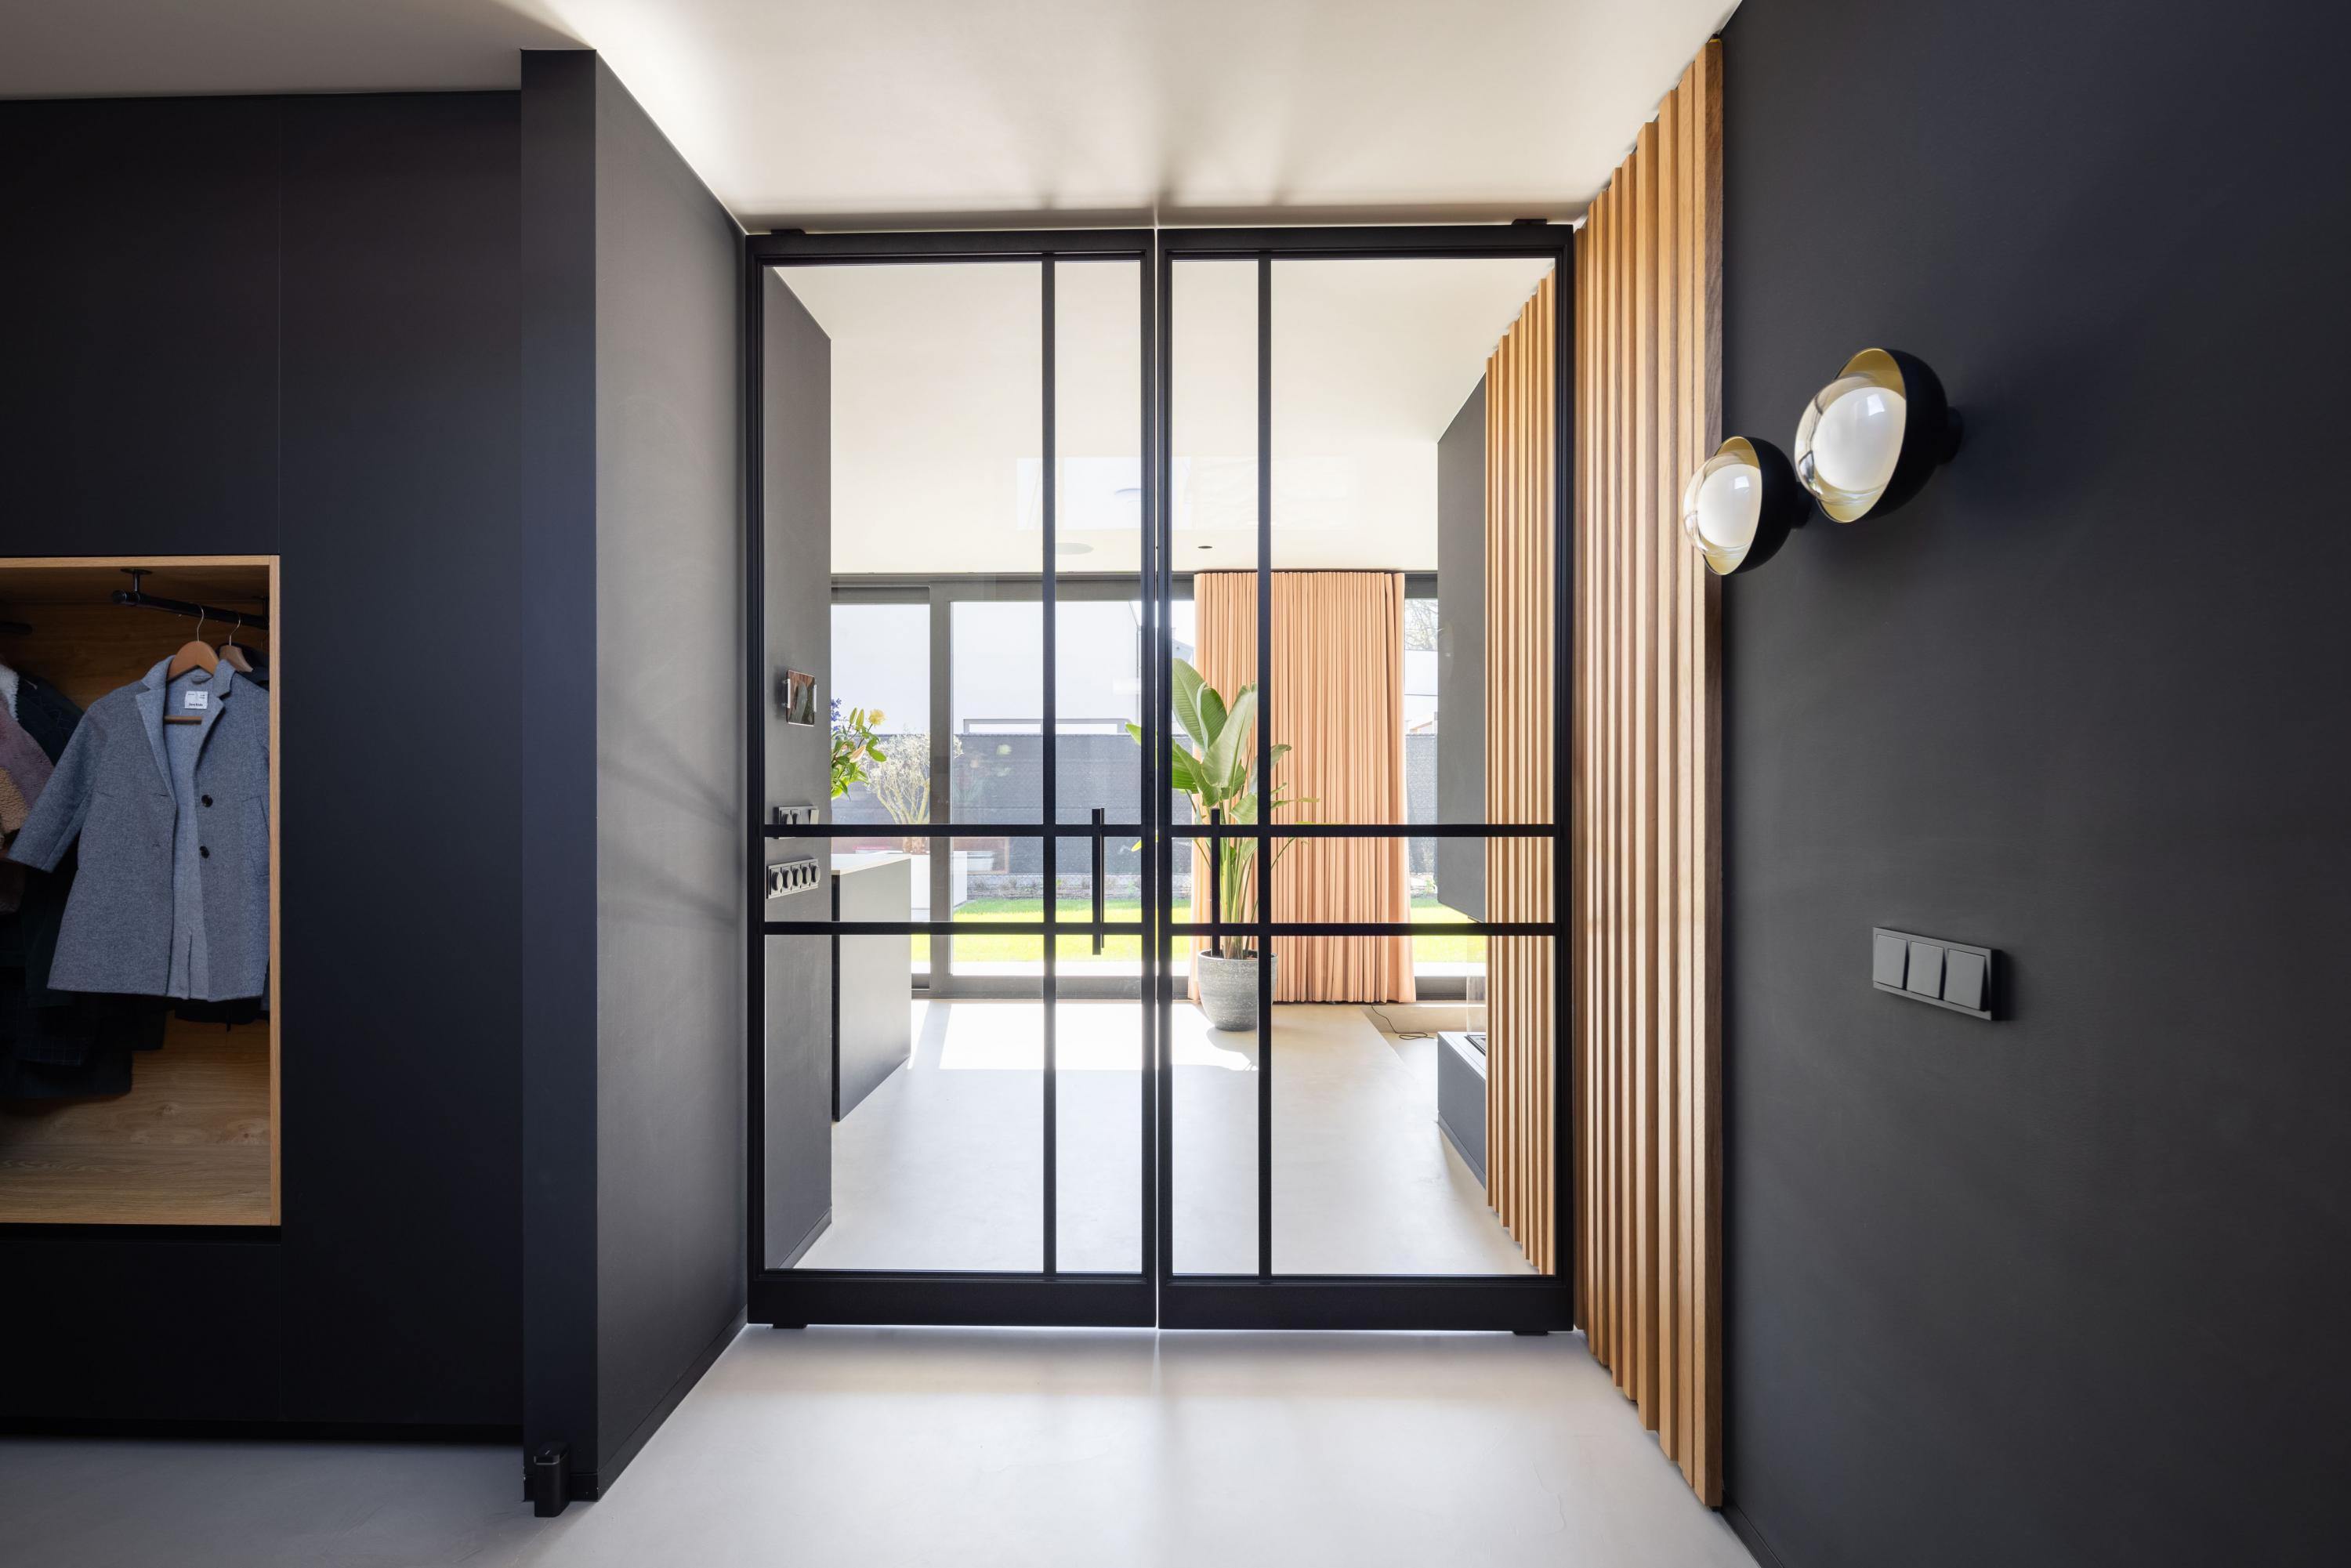 Glazen als roomdivider: dé oplossing voor jouw interieur! | Schuifwanden.nl